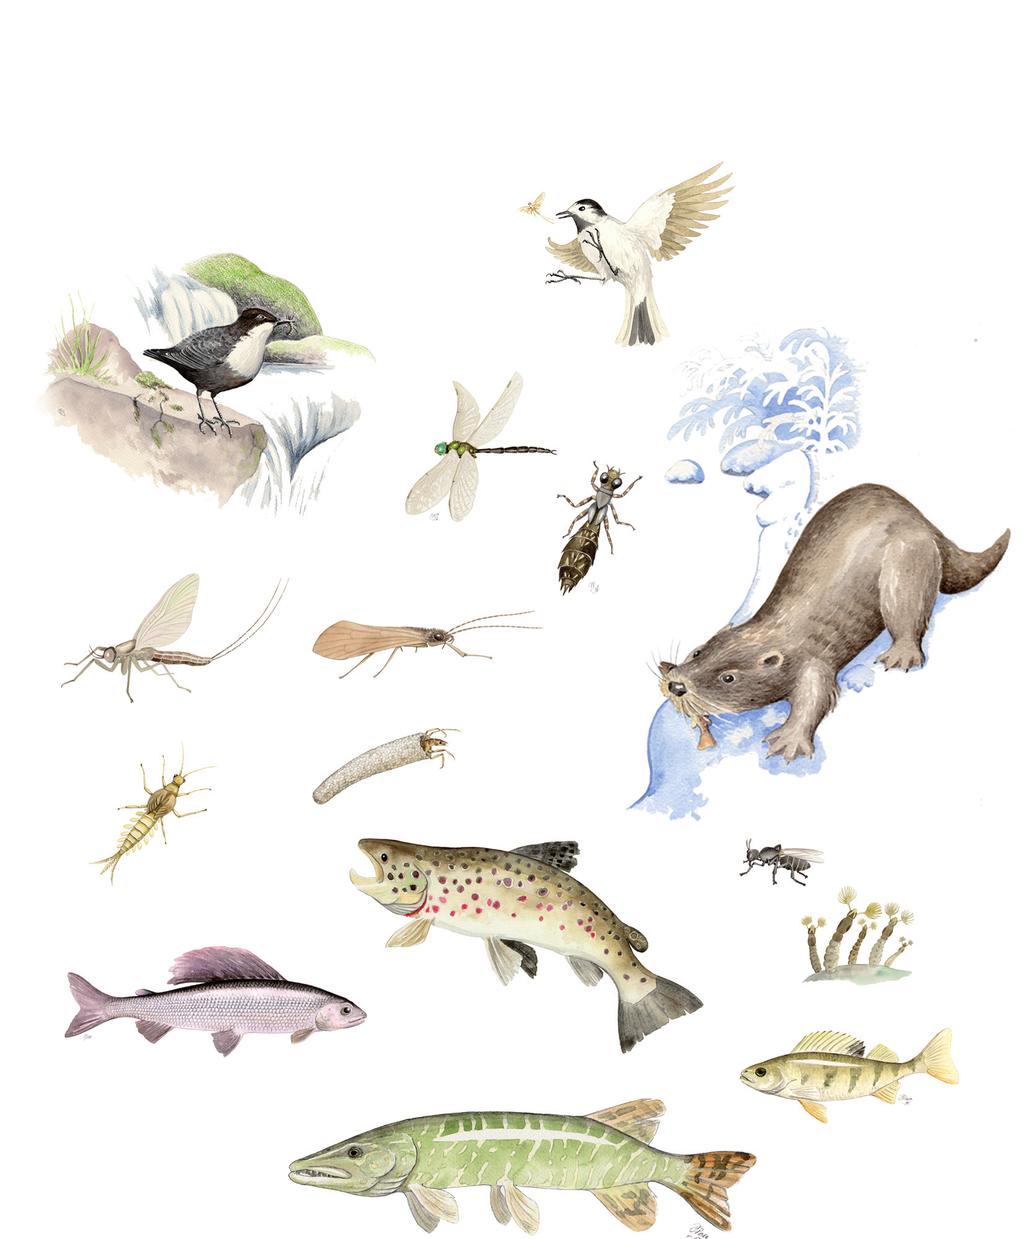 Jokivarren eläimiä Nimeä lajit: AHVEN, KOSKIKARA, SAUKKO, MÄKÄRÄ, TAIMEN,